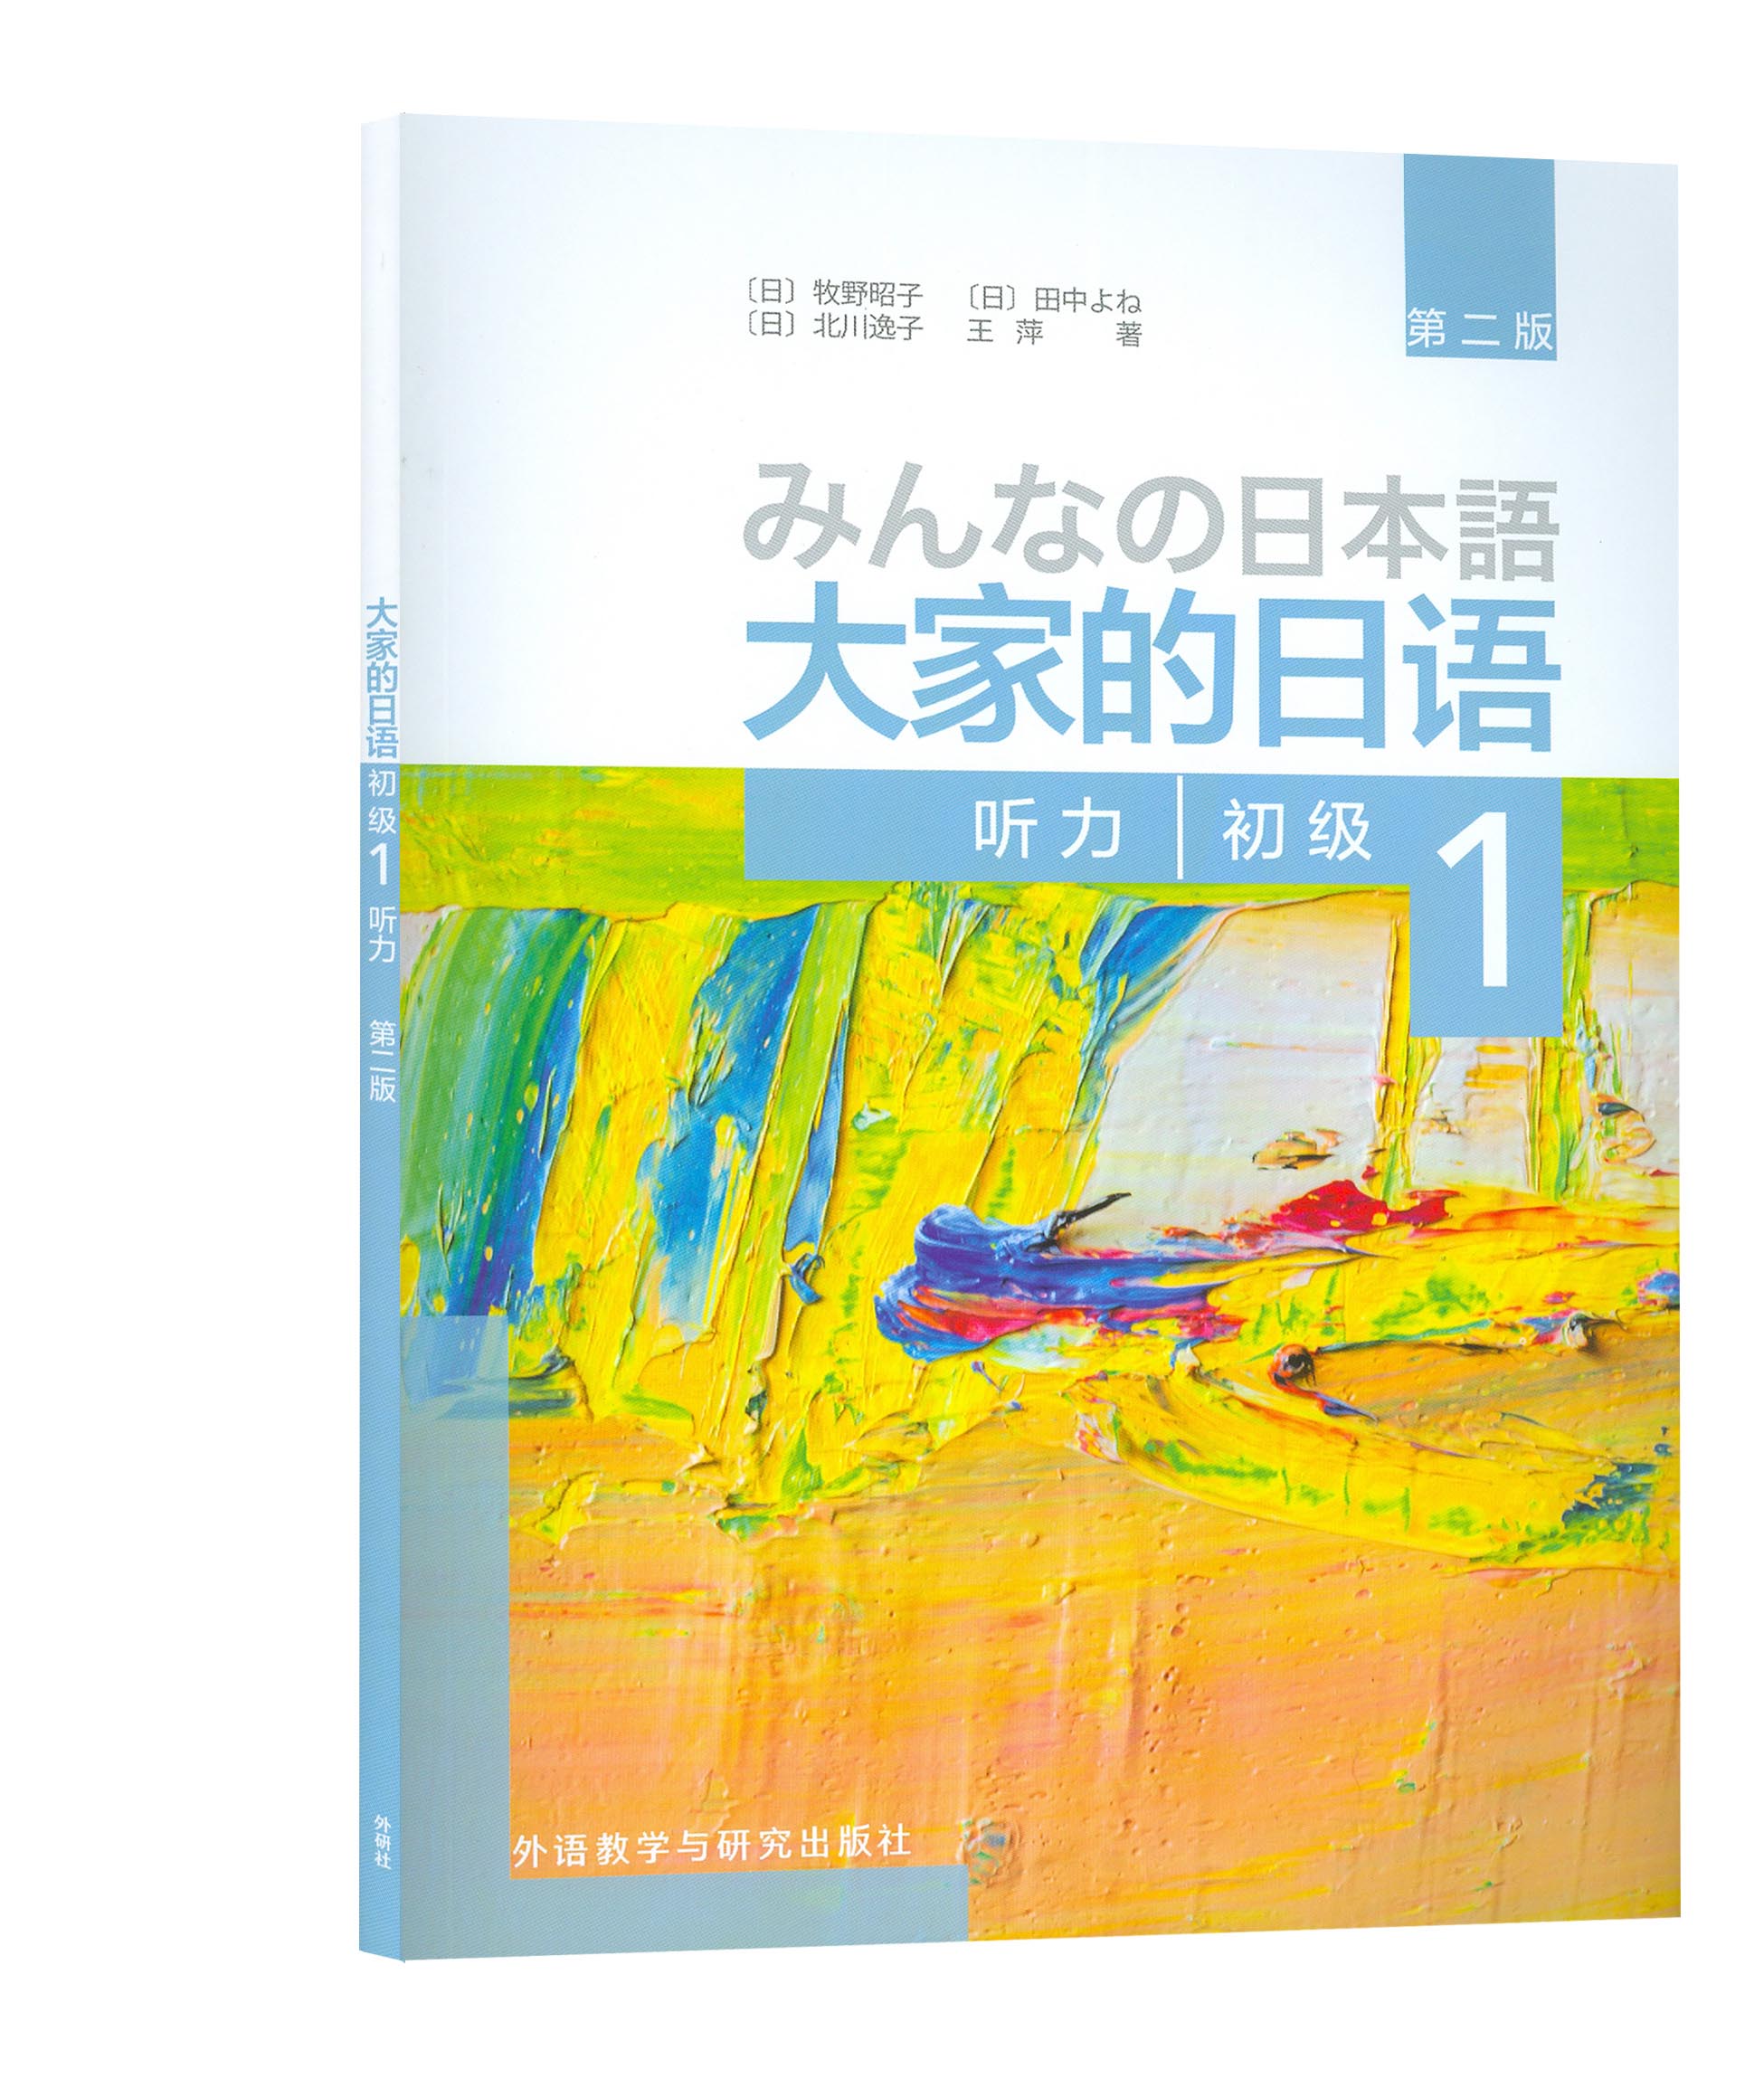 大家的日语(第二版)(初级)(1)(听力) 日语考试辅导资料 外语教学与研究出版社